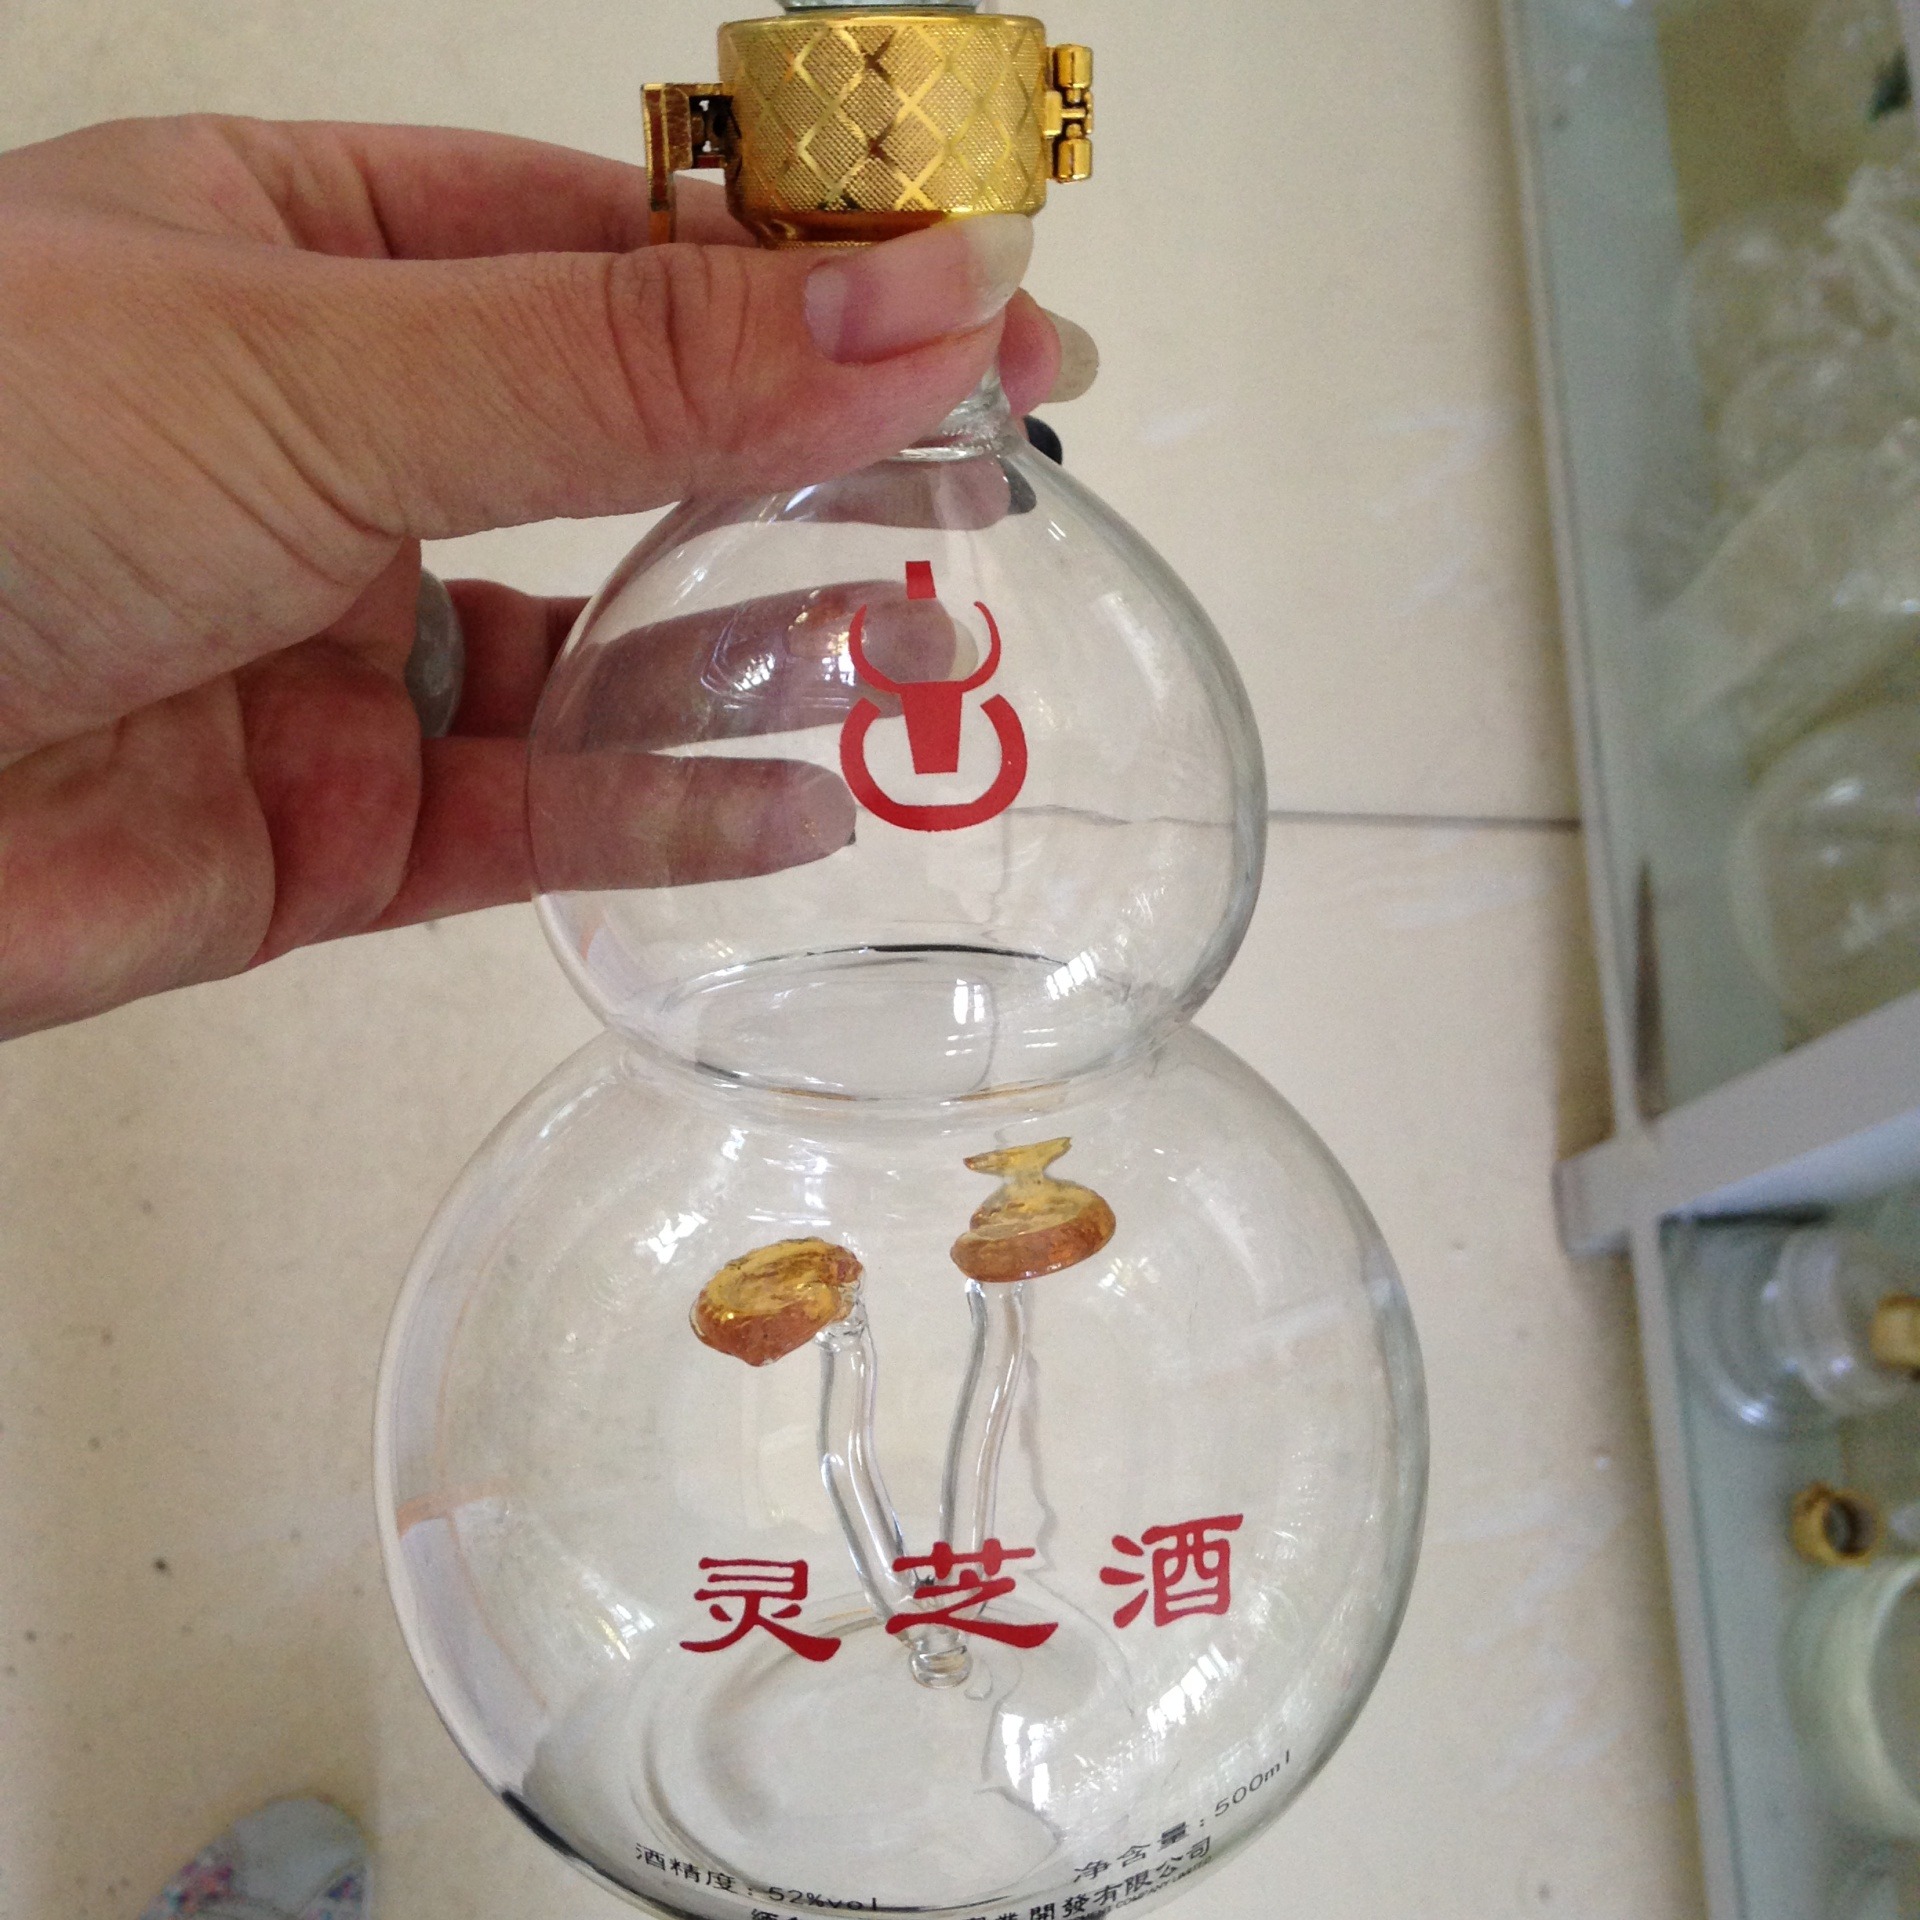 葫芦灵芝玻璃瓶  蘑菇造型工艺酒瓶 灵芝药酒瓶  酒水包装 养生泡酒器图片